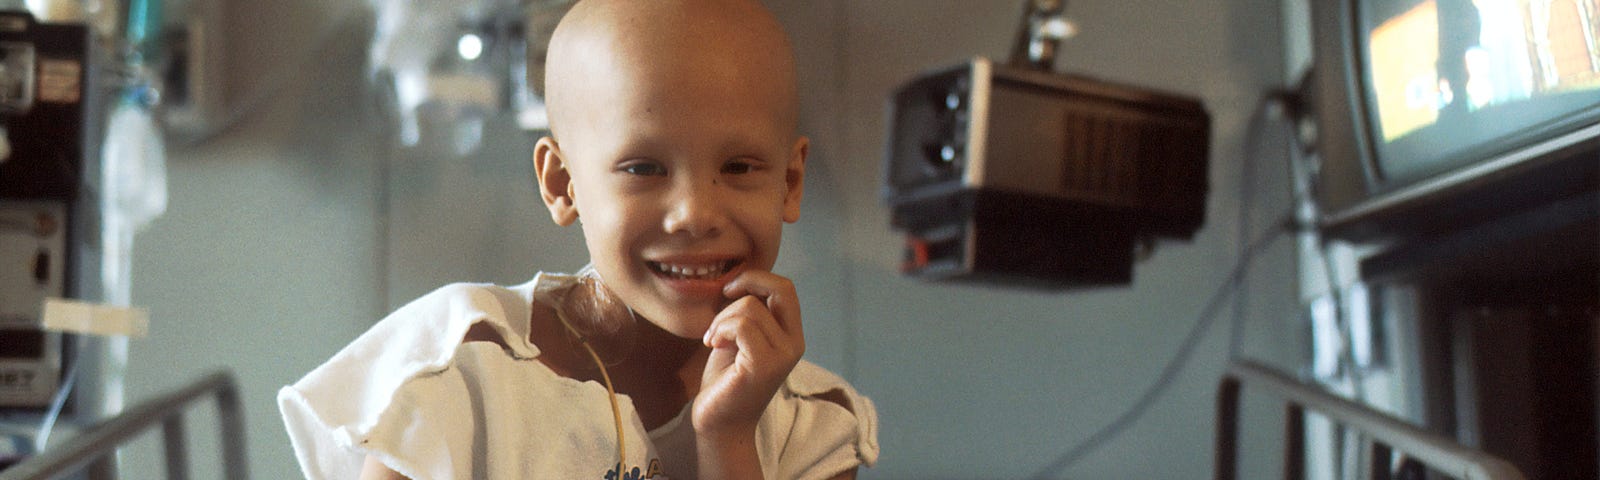 Little Girl battling cancer, National Cancer Institute, Unsplash